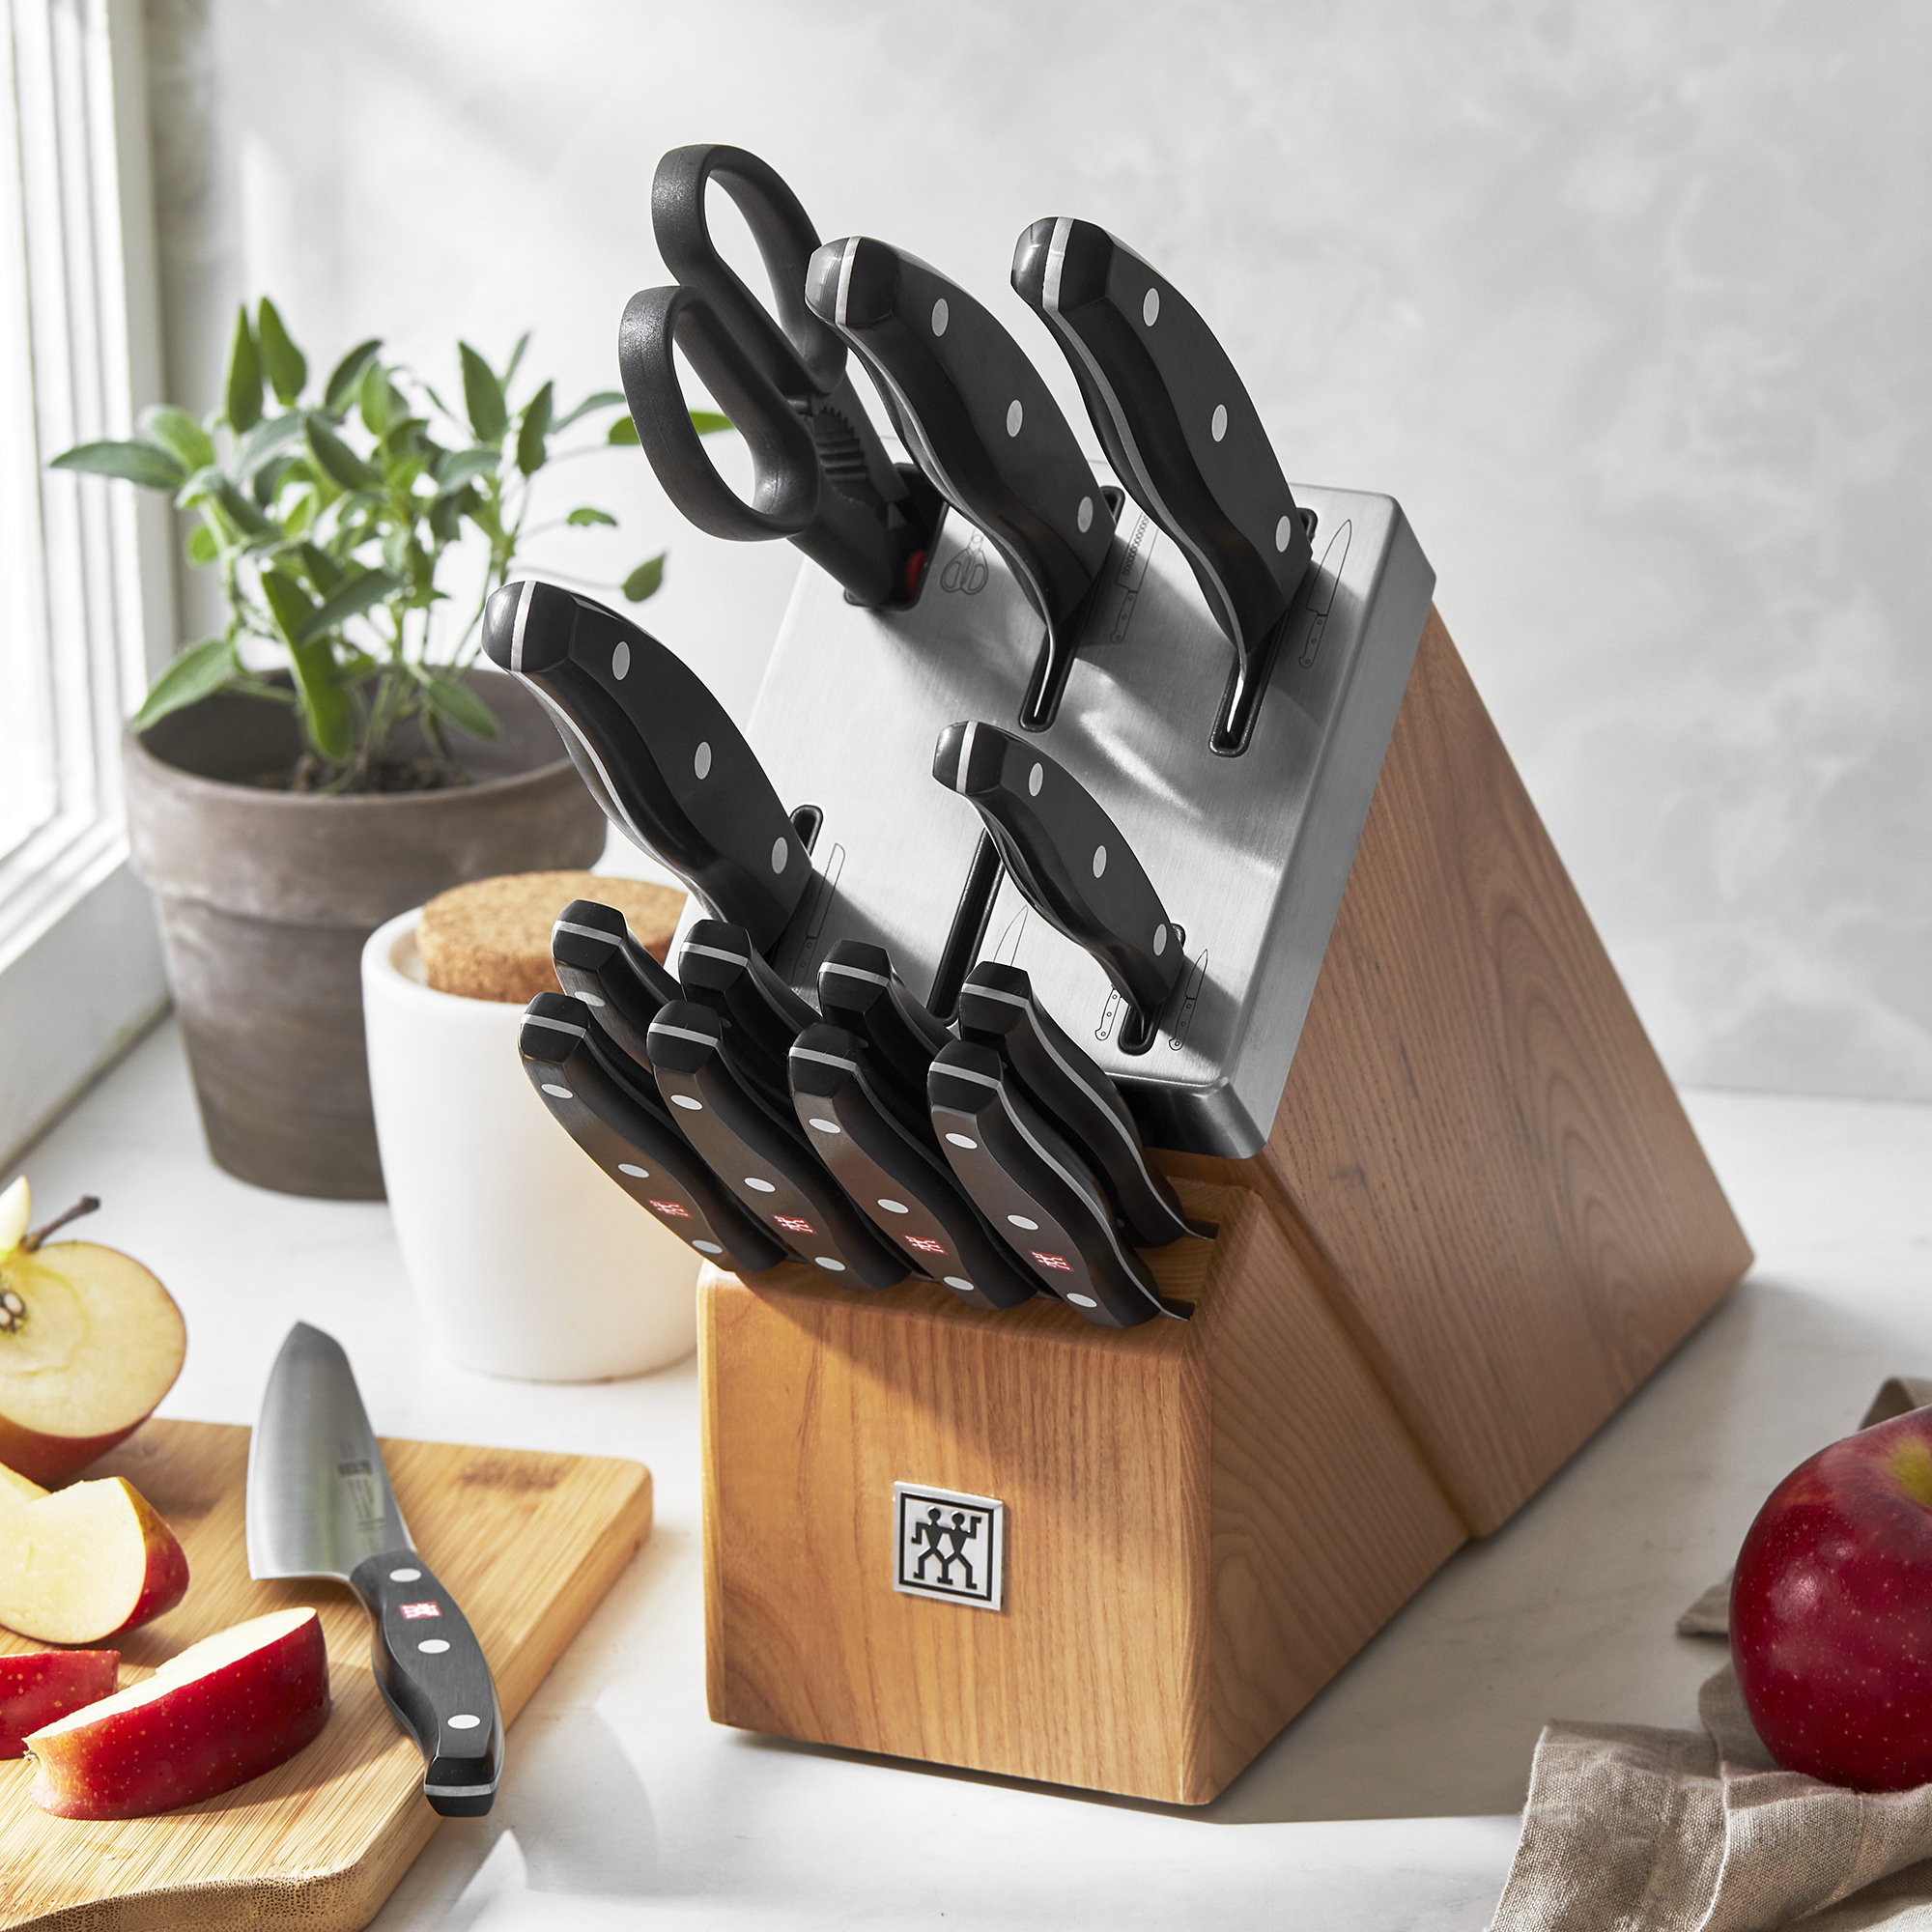 Zwilling J.A. Henckels Twin Gourmet 9-Piece Steak Knife Block Set